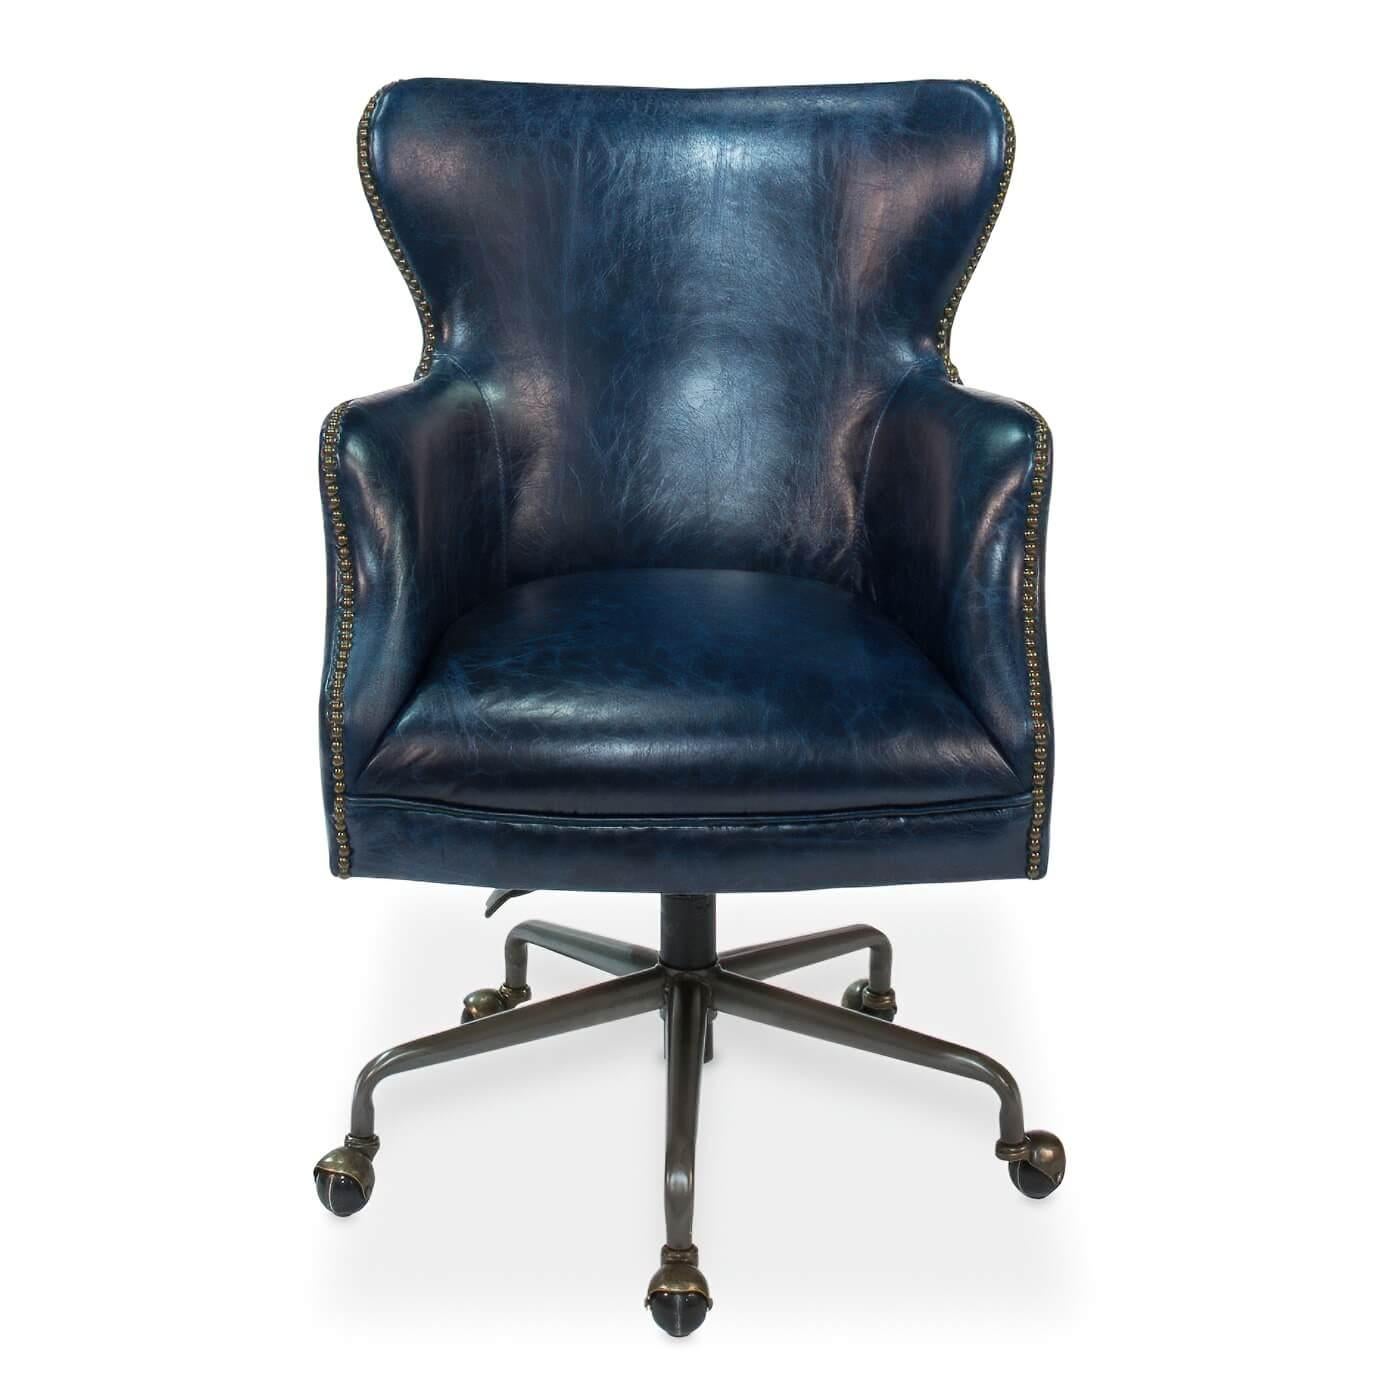 Una sedia da ufficio classica in pelle di colore blu Chateau. Questa sedia maestosa ha l'interno e l'esterno in pelle liscia ed è impreziosita da decorazioni in testa di chiodo. Poggia su una base a 5 punte. Realizzato in pelle di mucca di prima